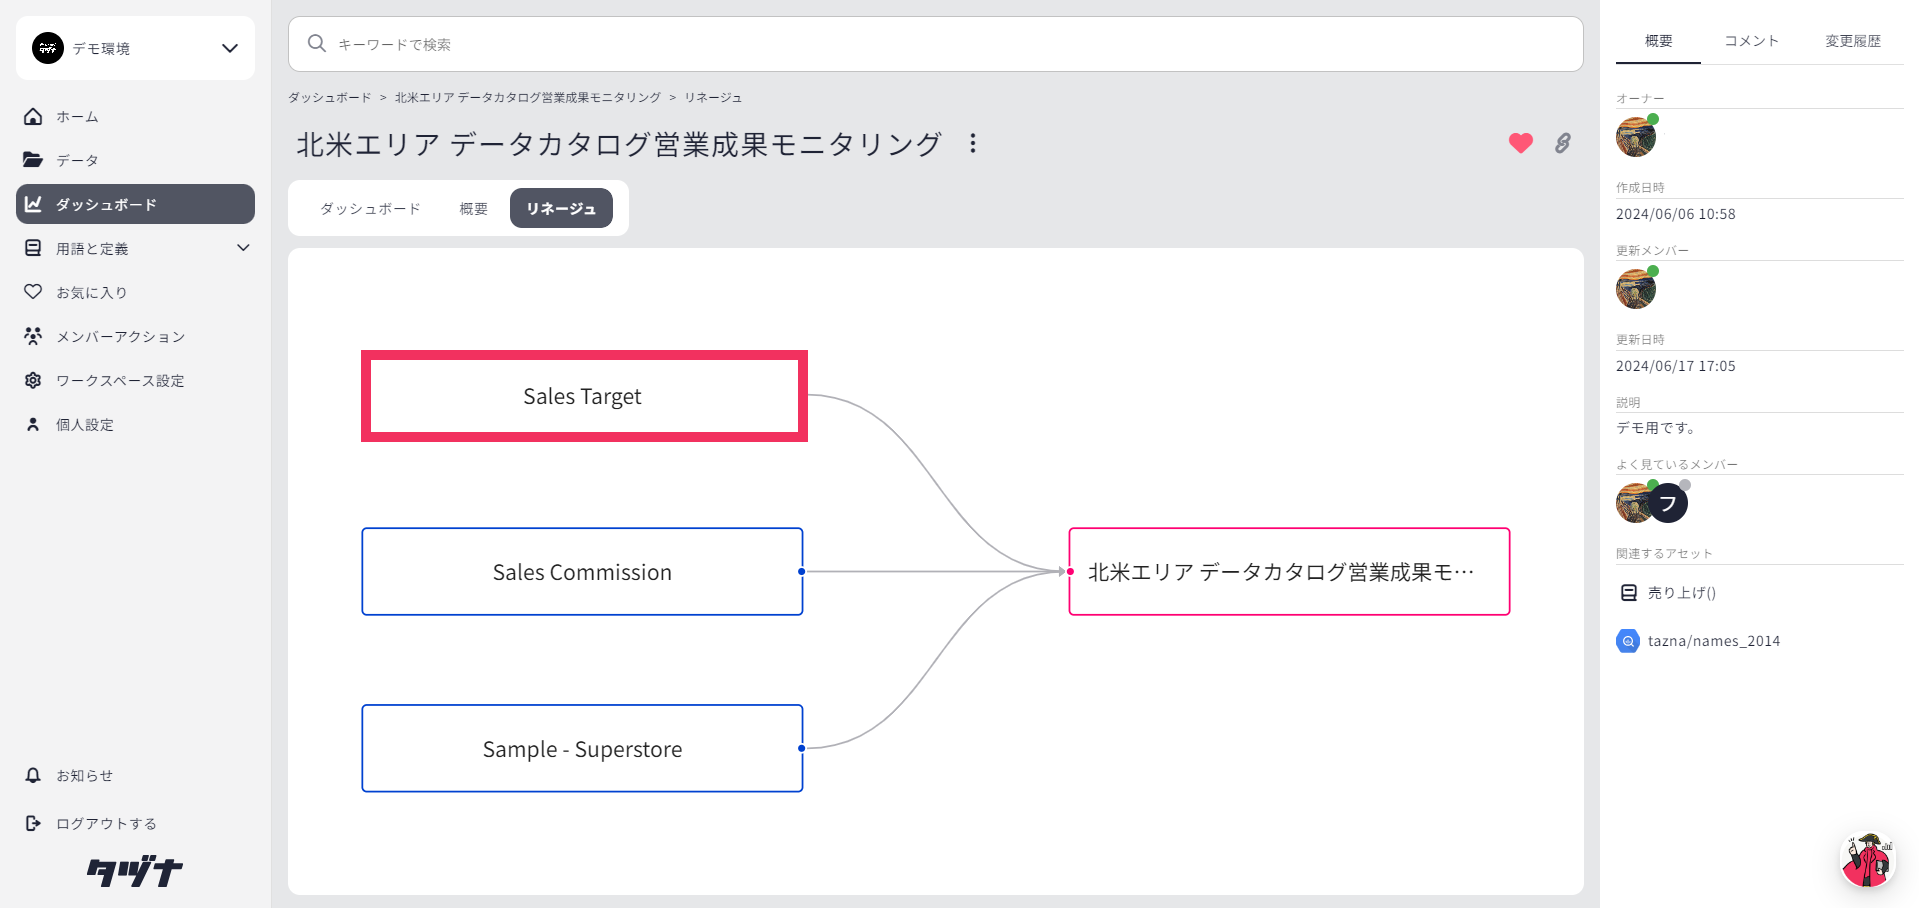 【機能拡張】データカタログ「タヅナ」、リネージュ機能で表示されるデータソースのリンクを設定